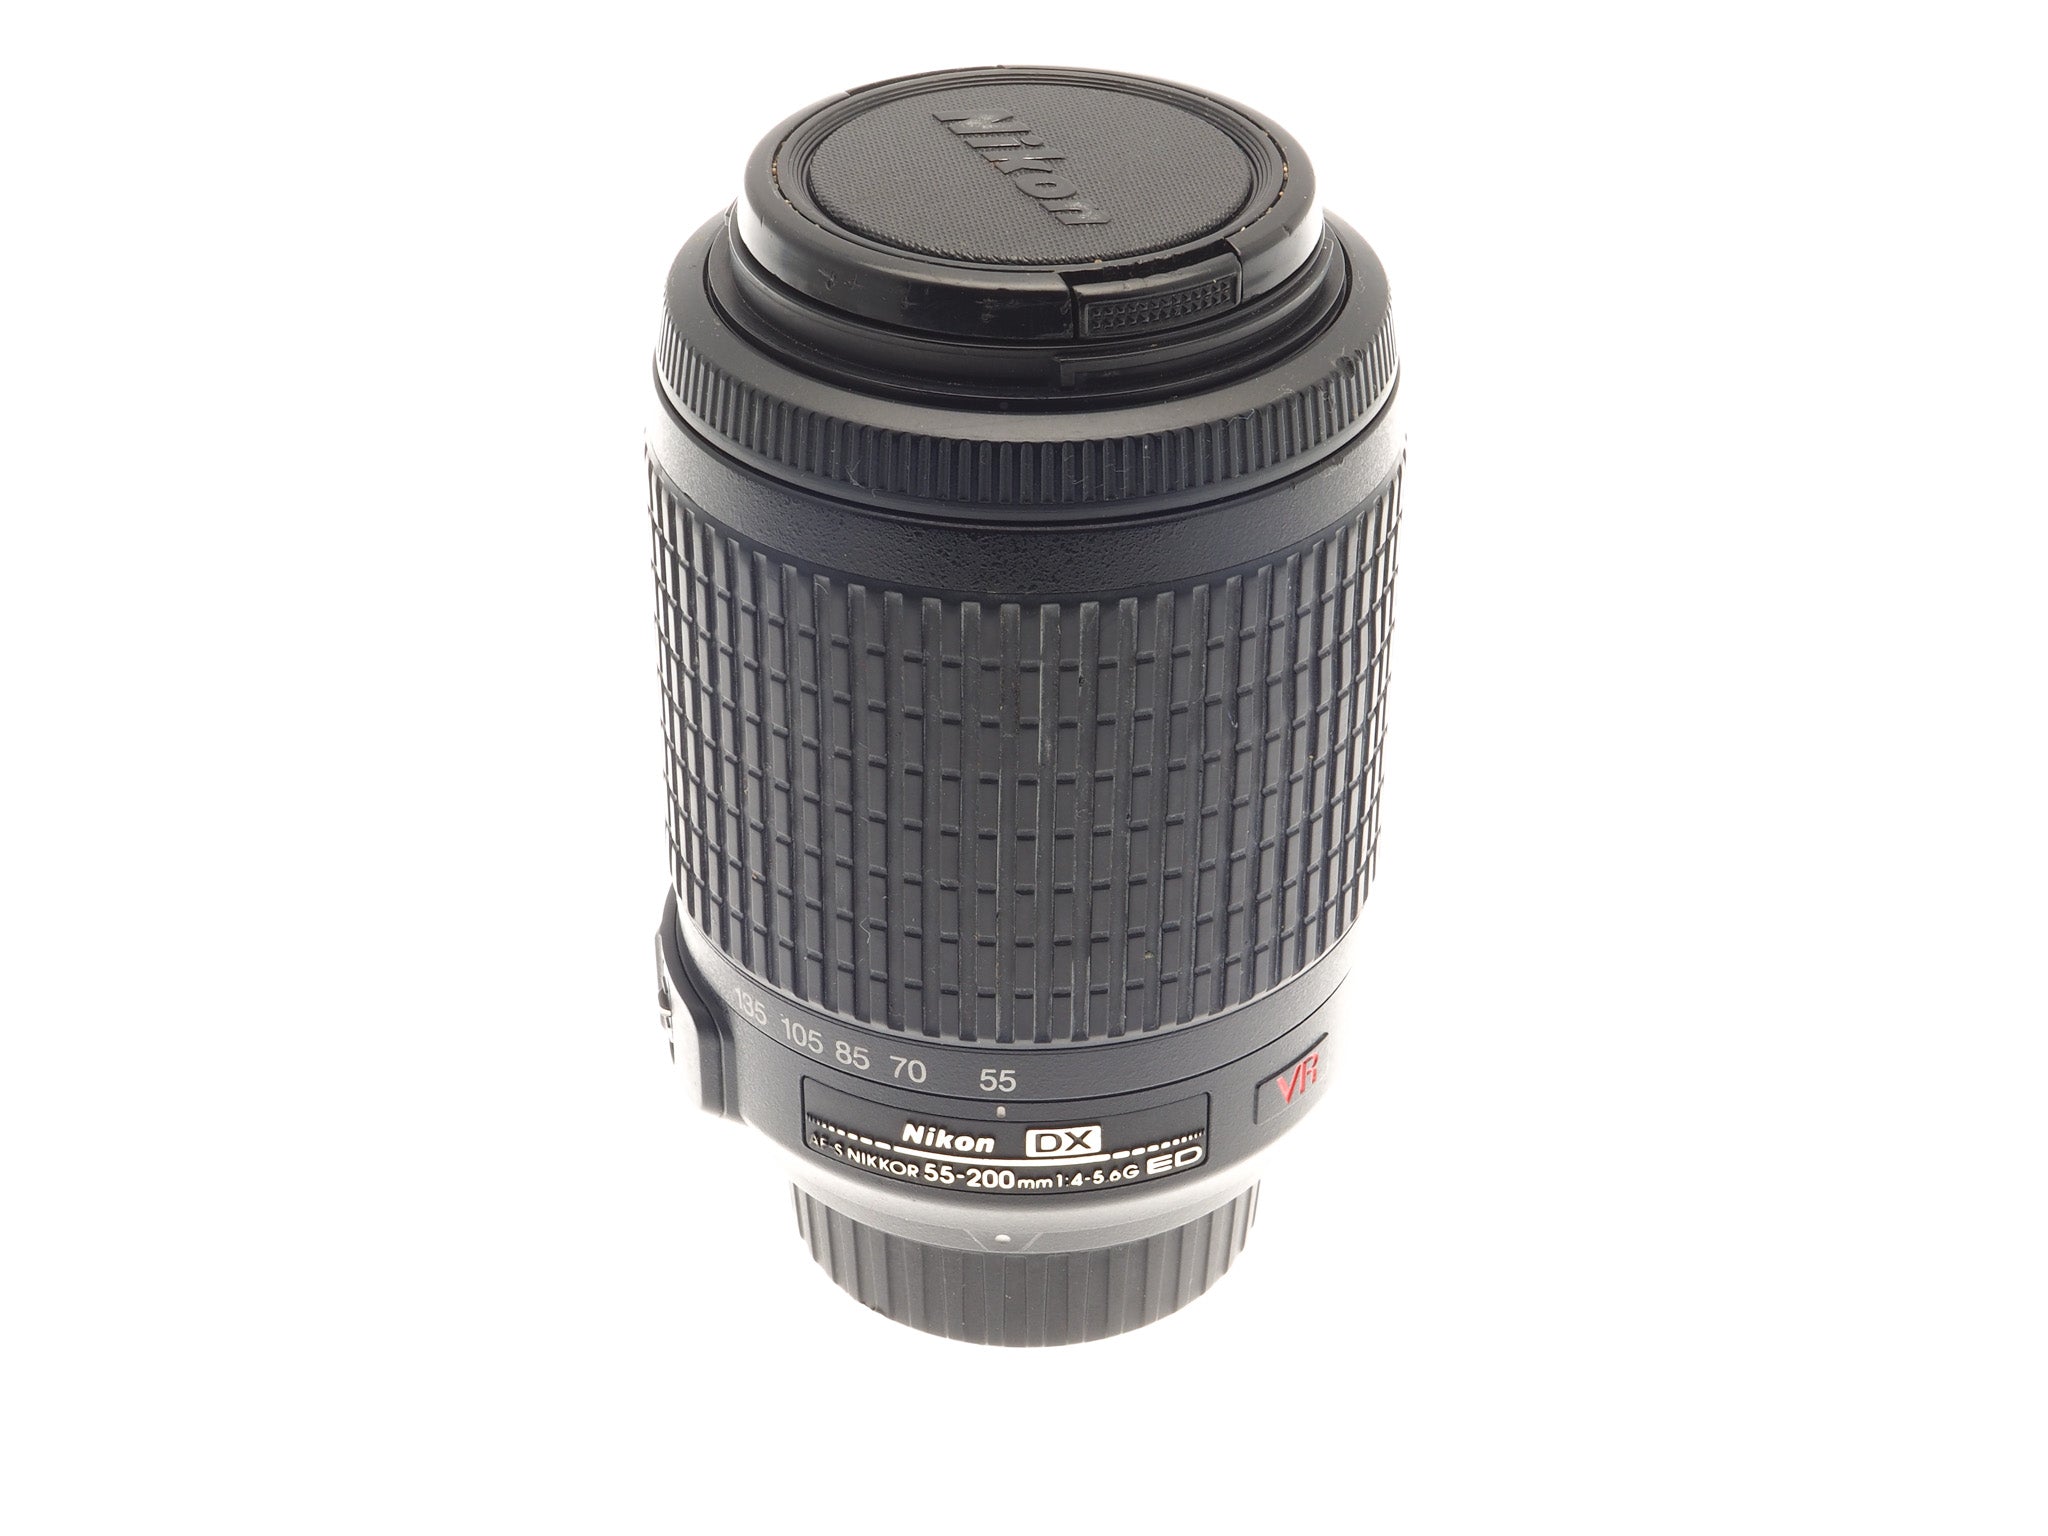 Nikon 55-200mm f4-5.6 G ED SWM VR IF AF-S - Lens